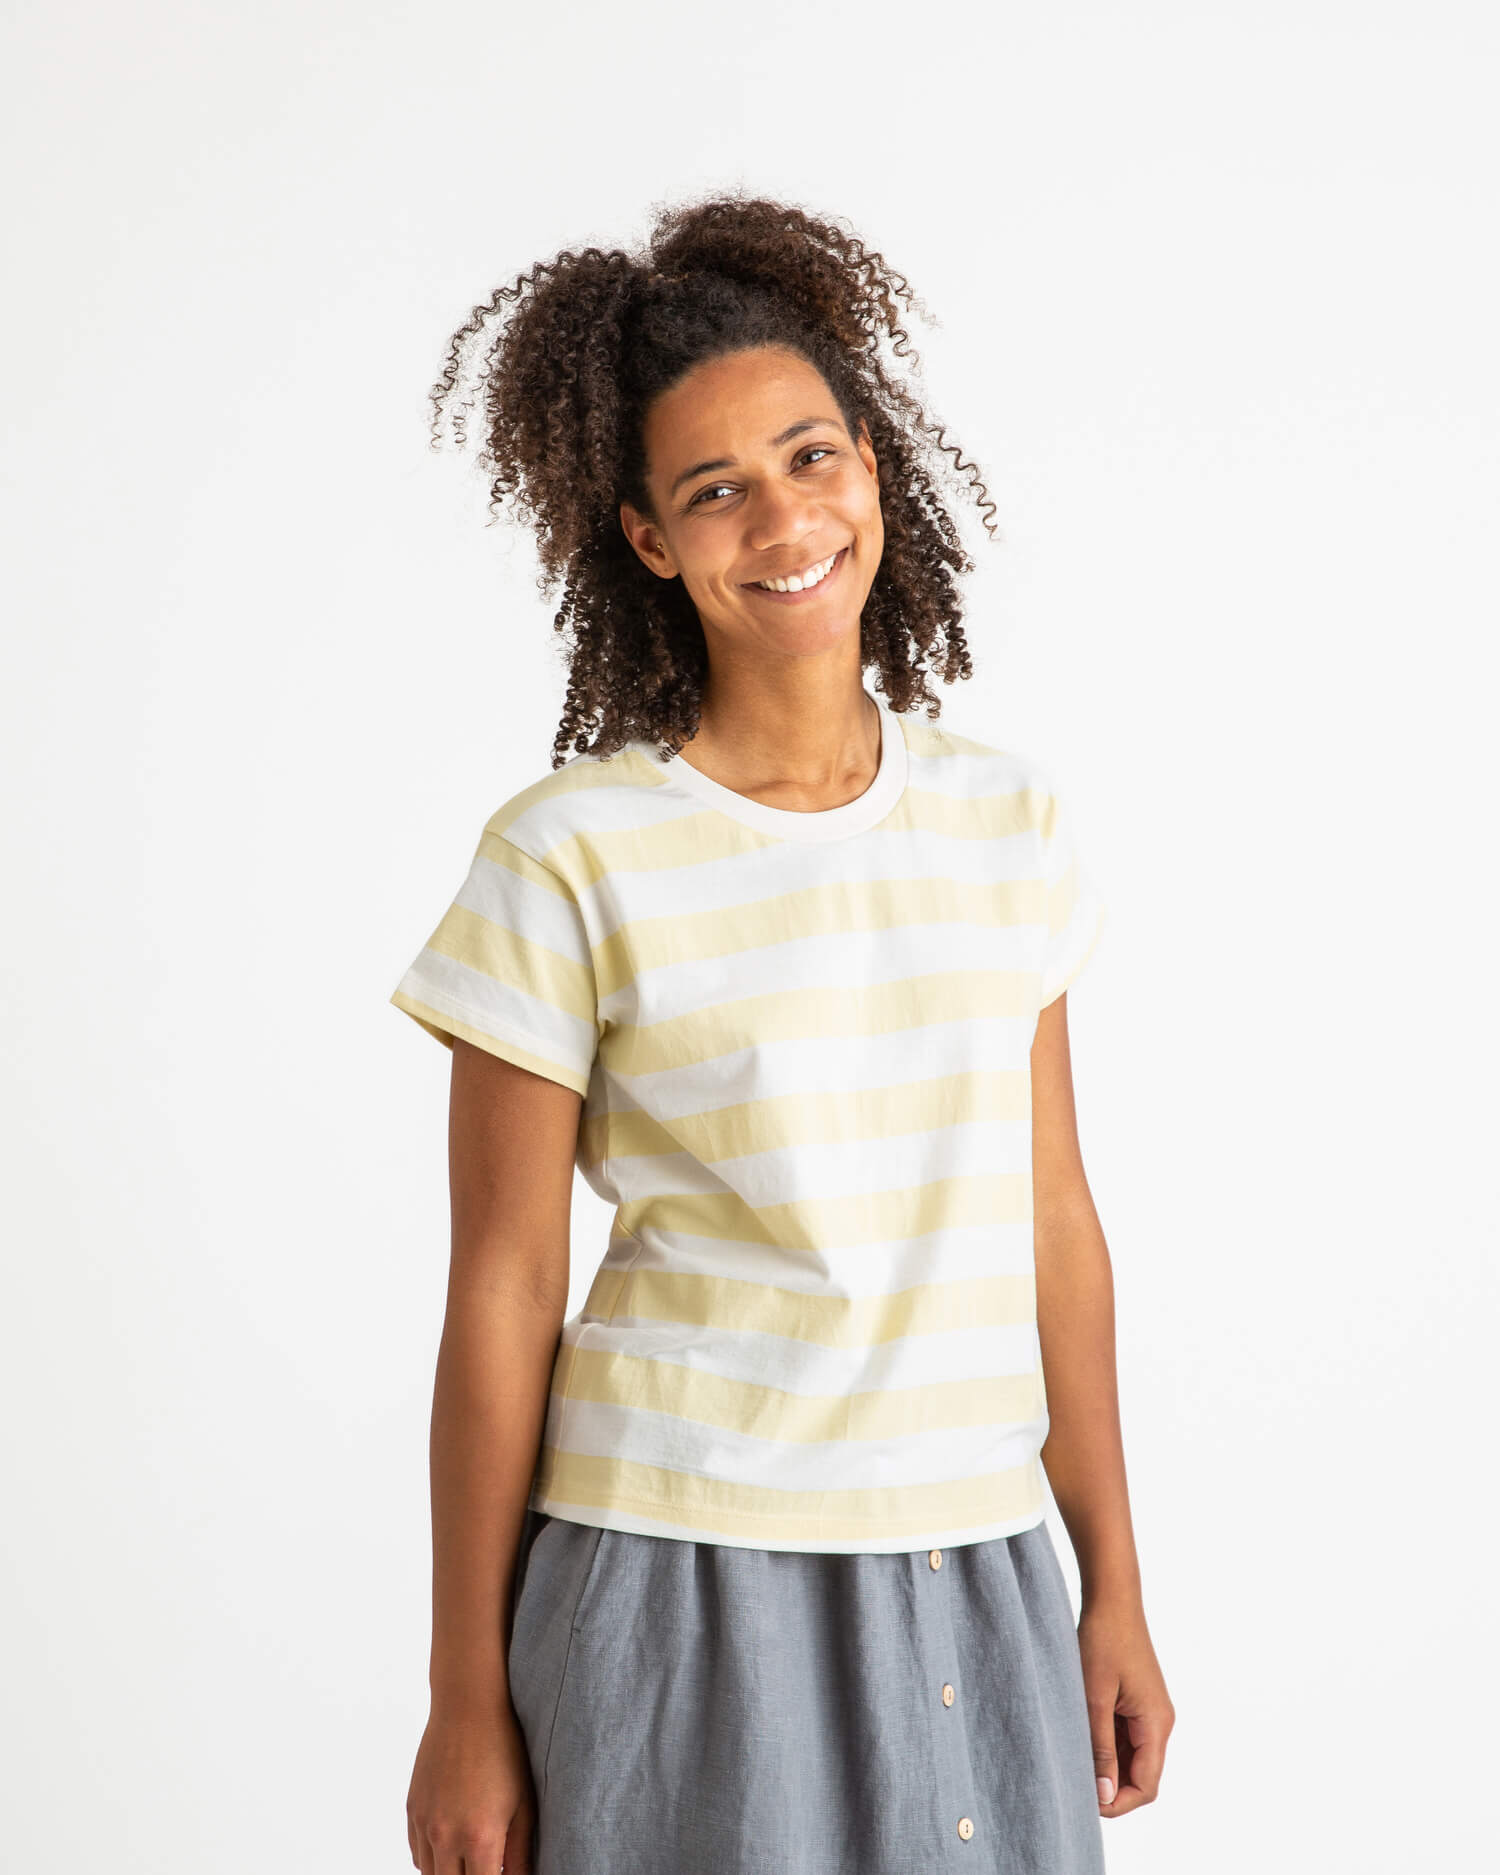 Gelb-weiss gestreiftes T-Shirt aus 100% Bio-Baumwolle von Matona